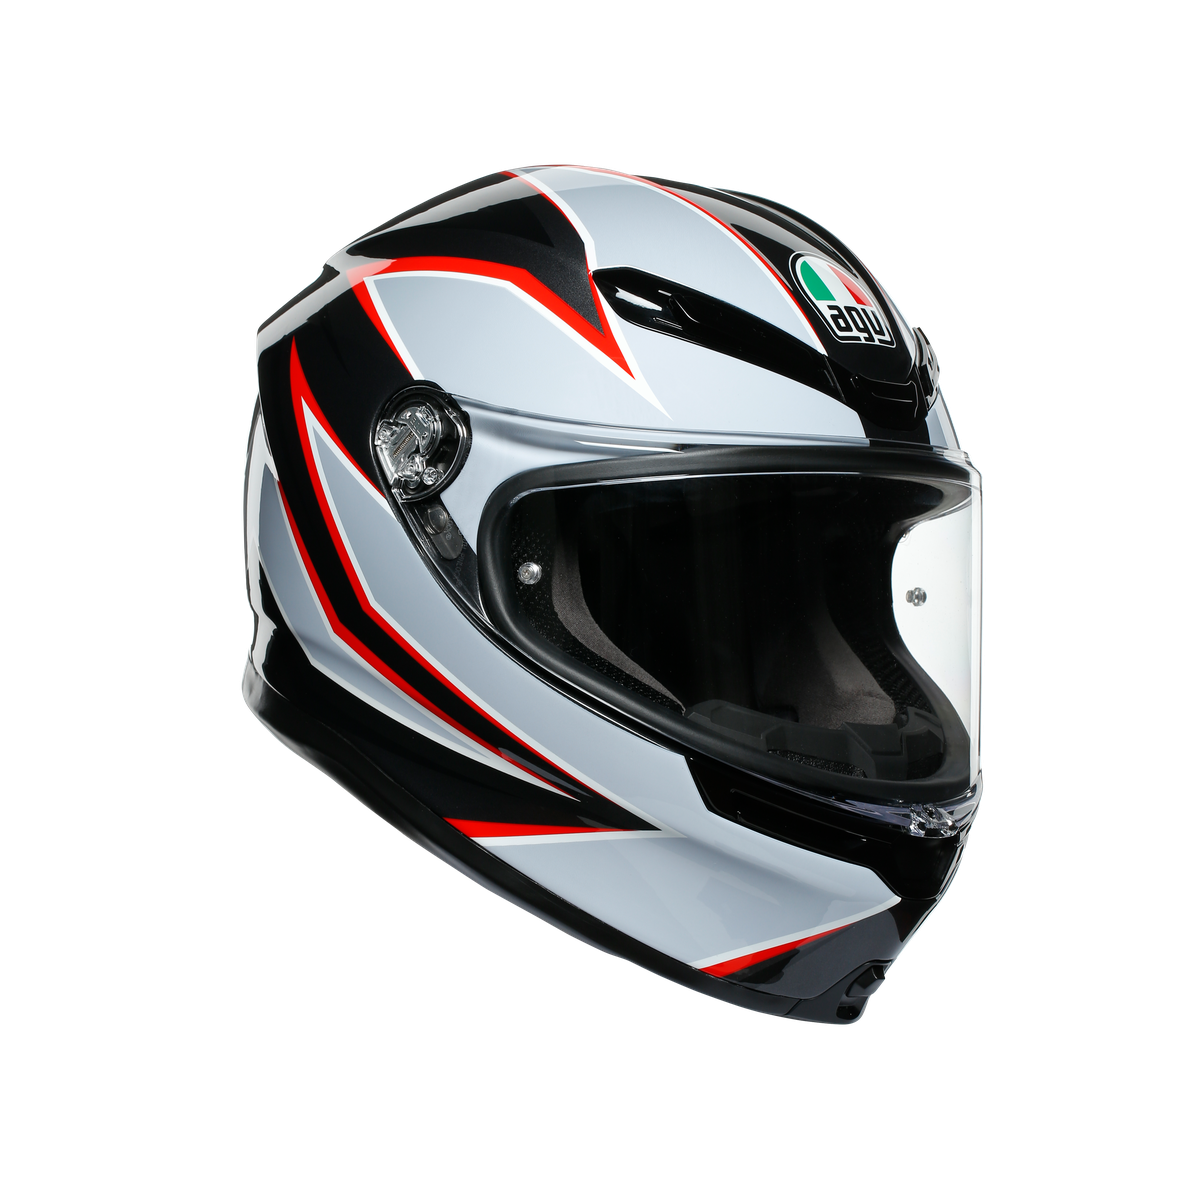 AGV K6 Flash Helmet - Matt Black/Grey/Red